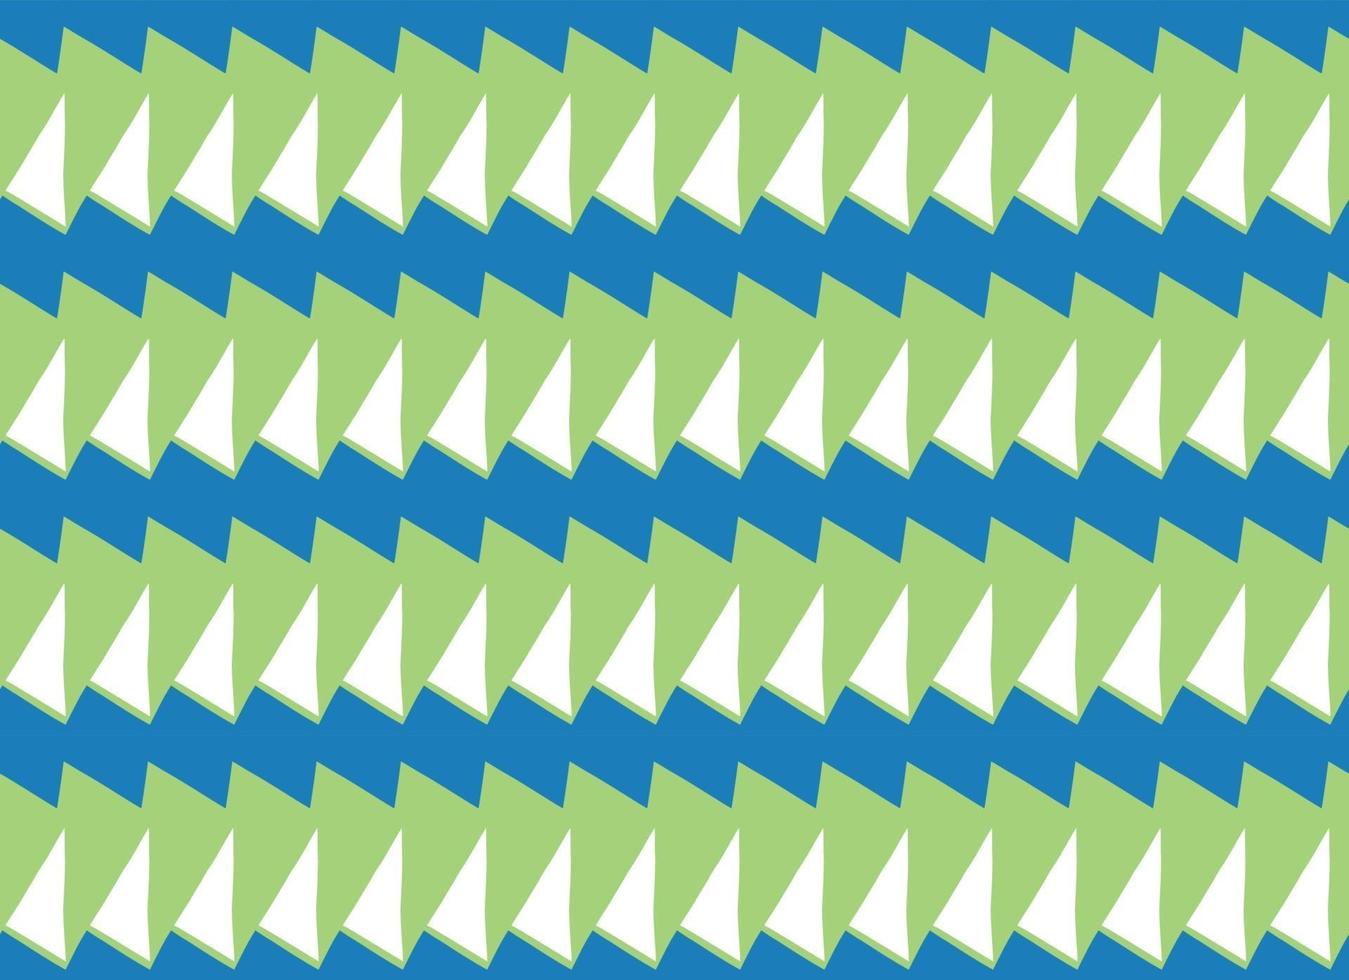 Vector texture di sfondo, seamless pattern. colori disegnati a mano, verdi, blu, bianchi.